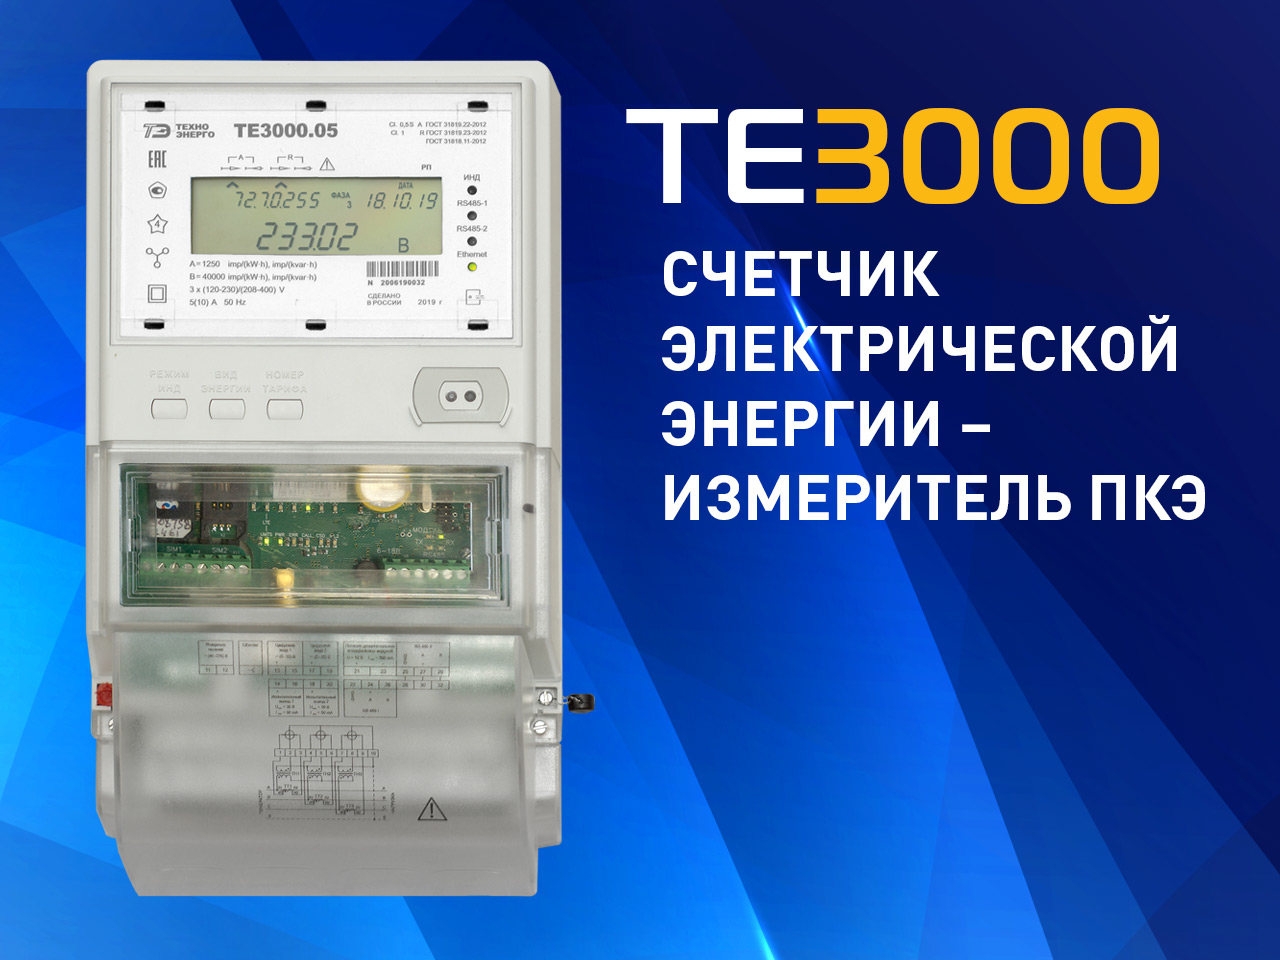 Счетчик электроэнергии ТЕ3000 допущен к применению на объектах ПАО "Россети"